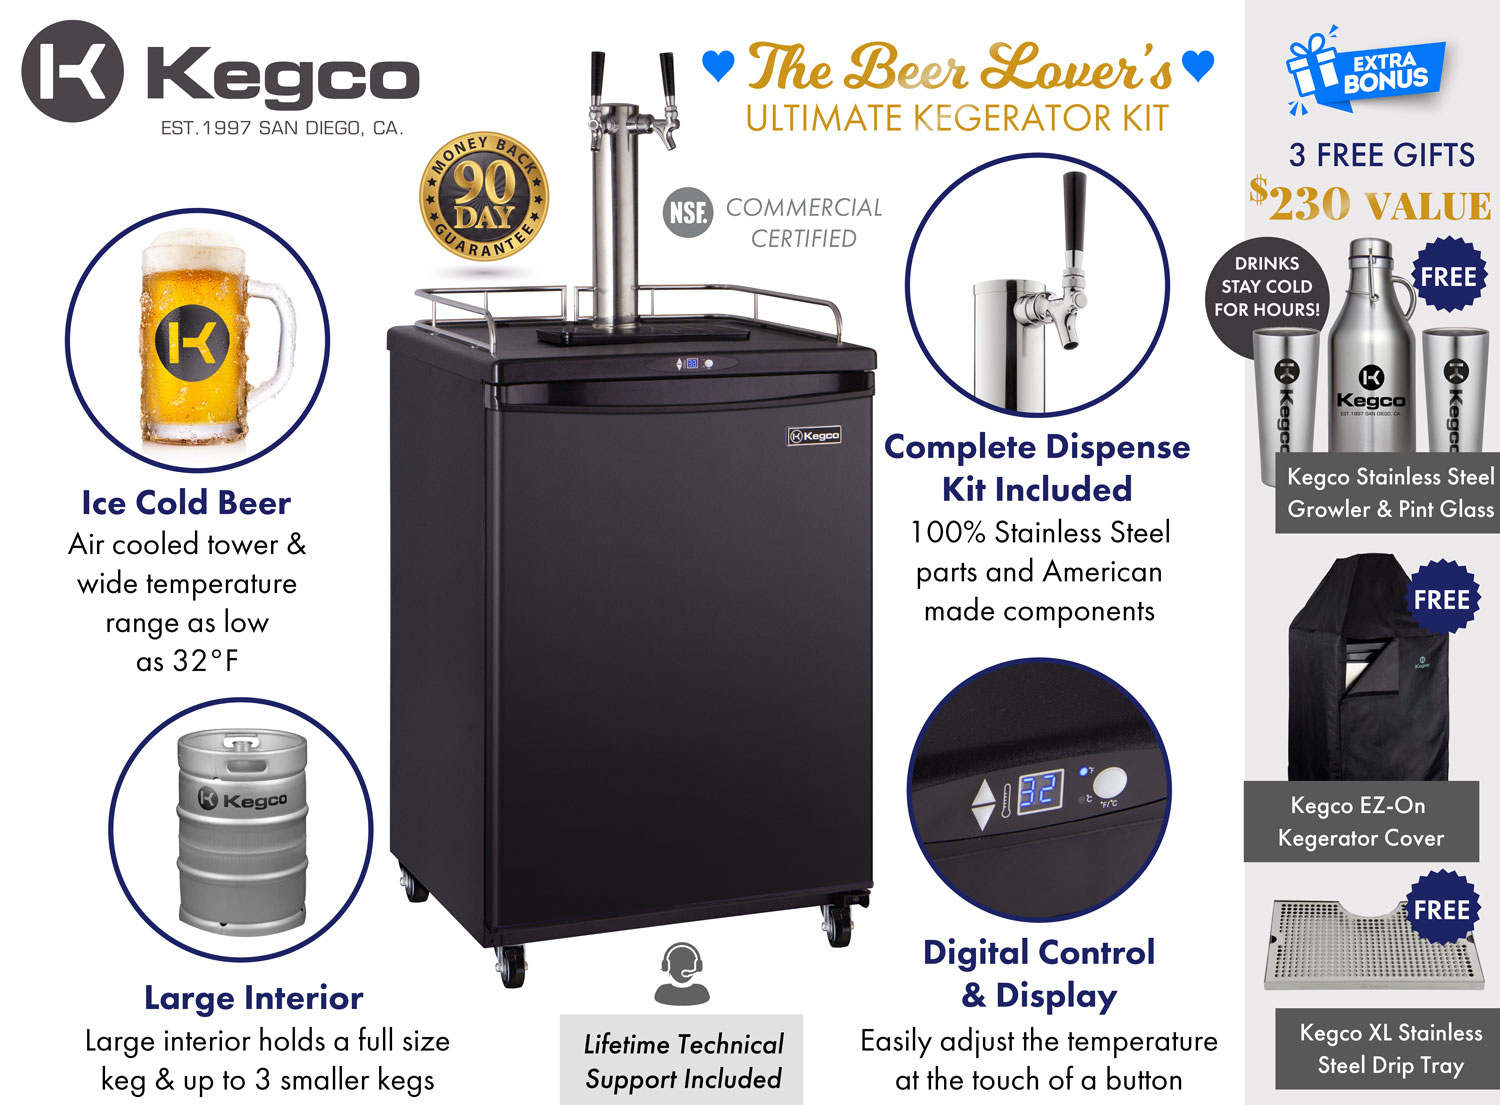 Beer Lover's Ultimate Kegerator Kit